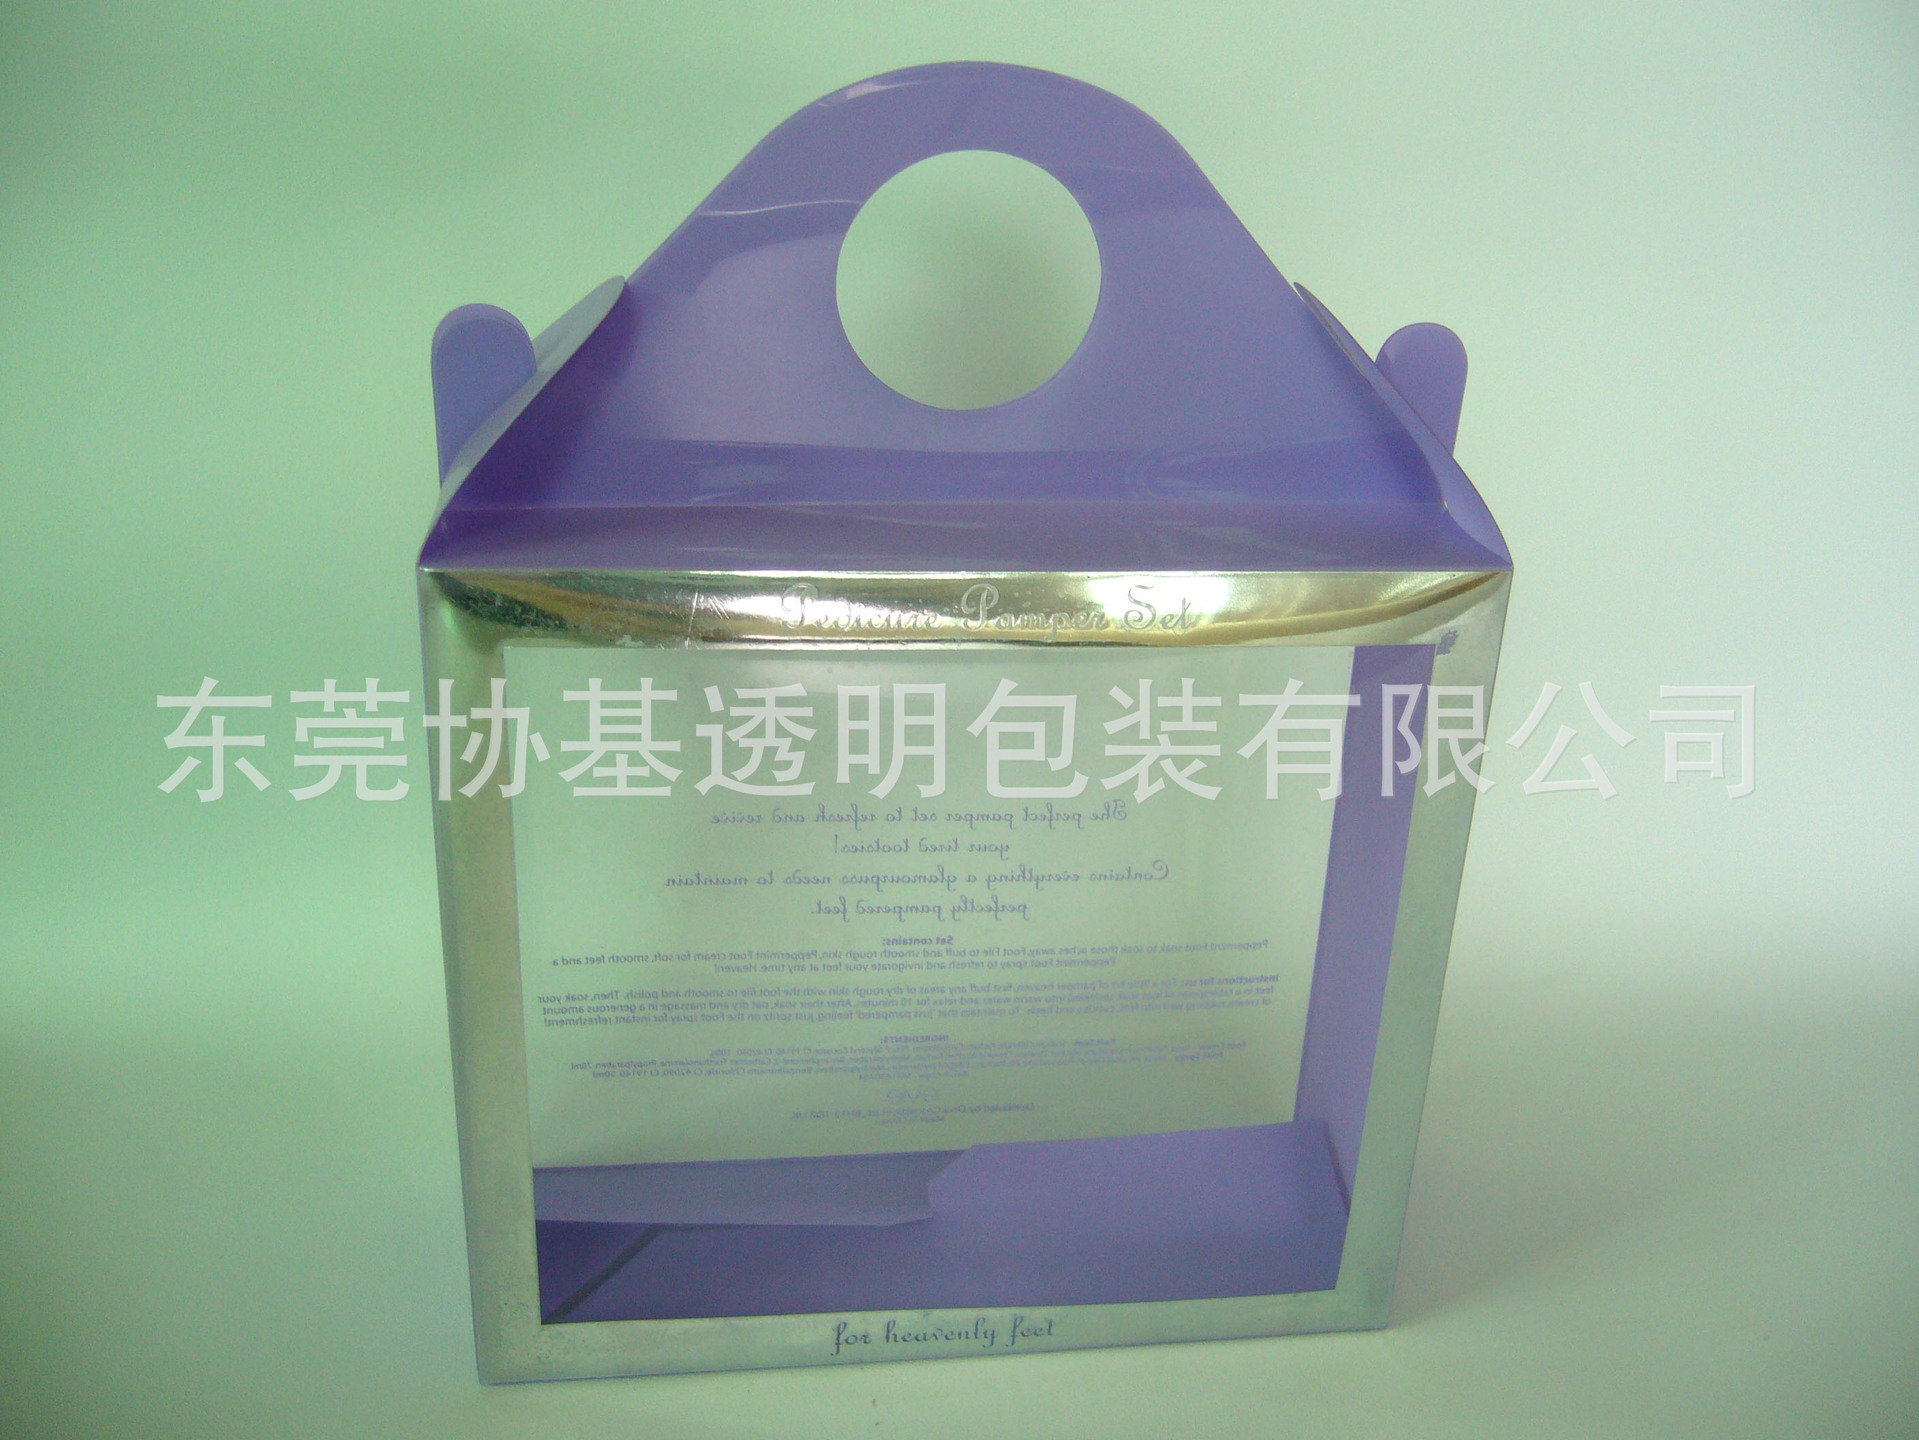 中国国际加工,包装及印刷科技展览会_塑料包装盒印刷_印刷塑料油墨